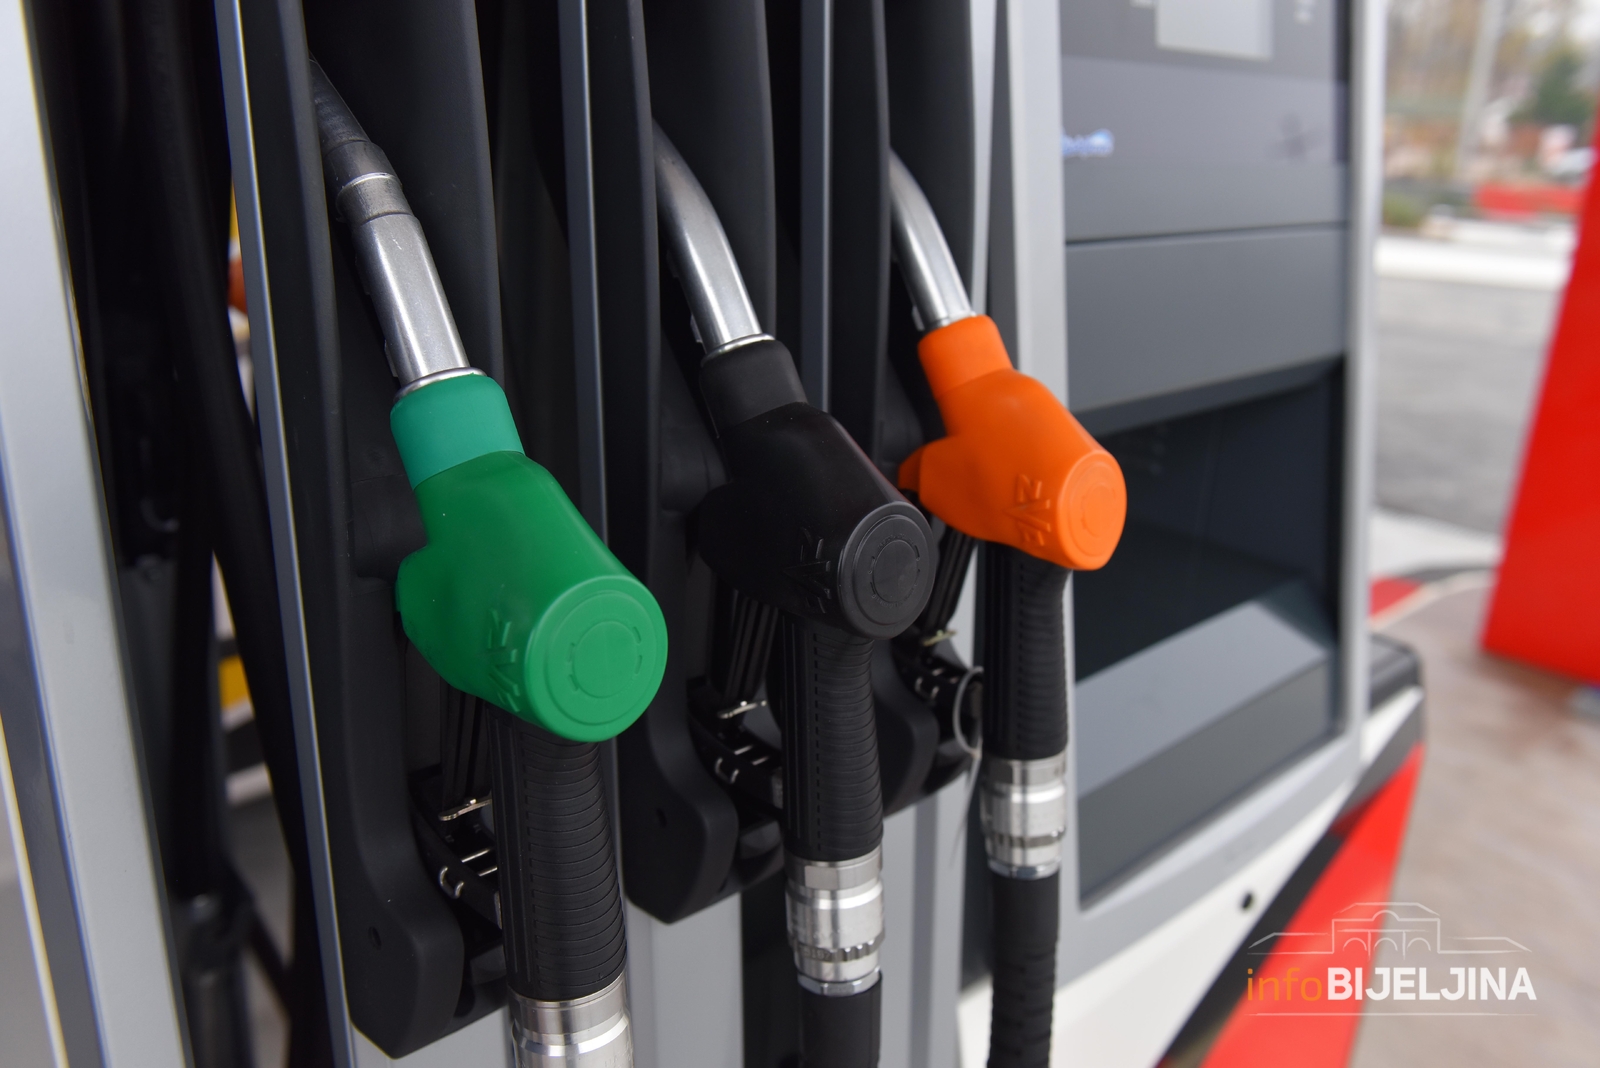 Zvanični podaci: Da li više benzinskih pumpi ima Bijeljina ili Banjaluka?